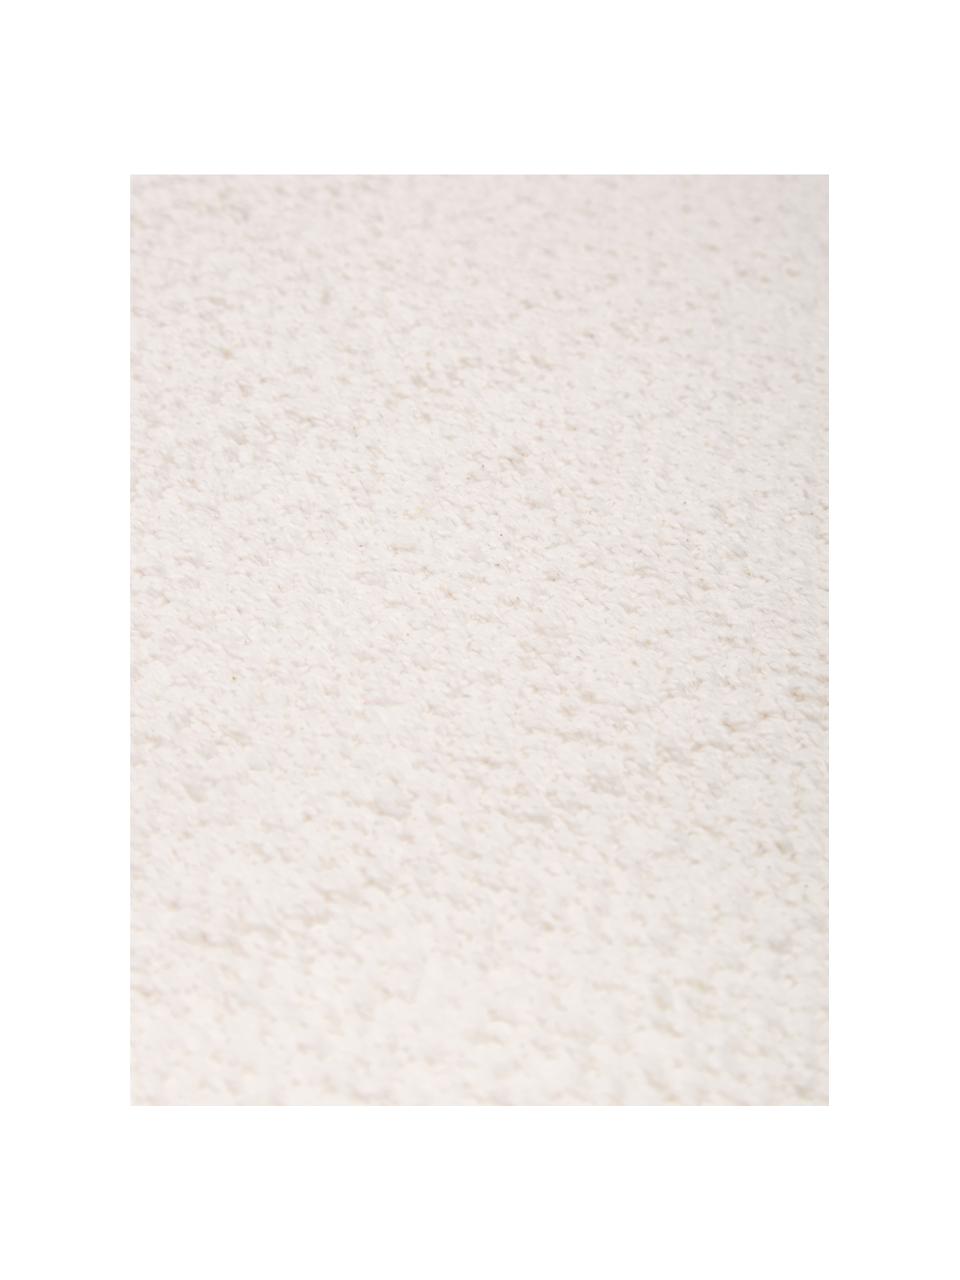 Tappeto in cotone bianco crema tessuto a mano Agneta, 100% cotone, Bianco crema, Larg. 200 x Lung. 300 cm (taglia L)